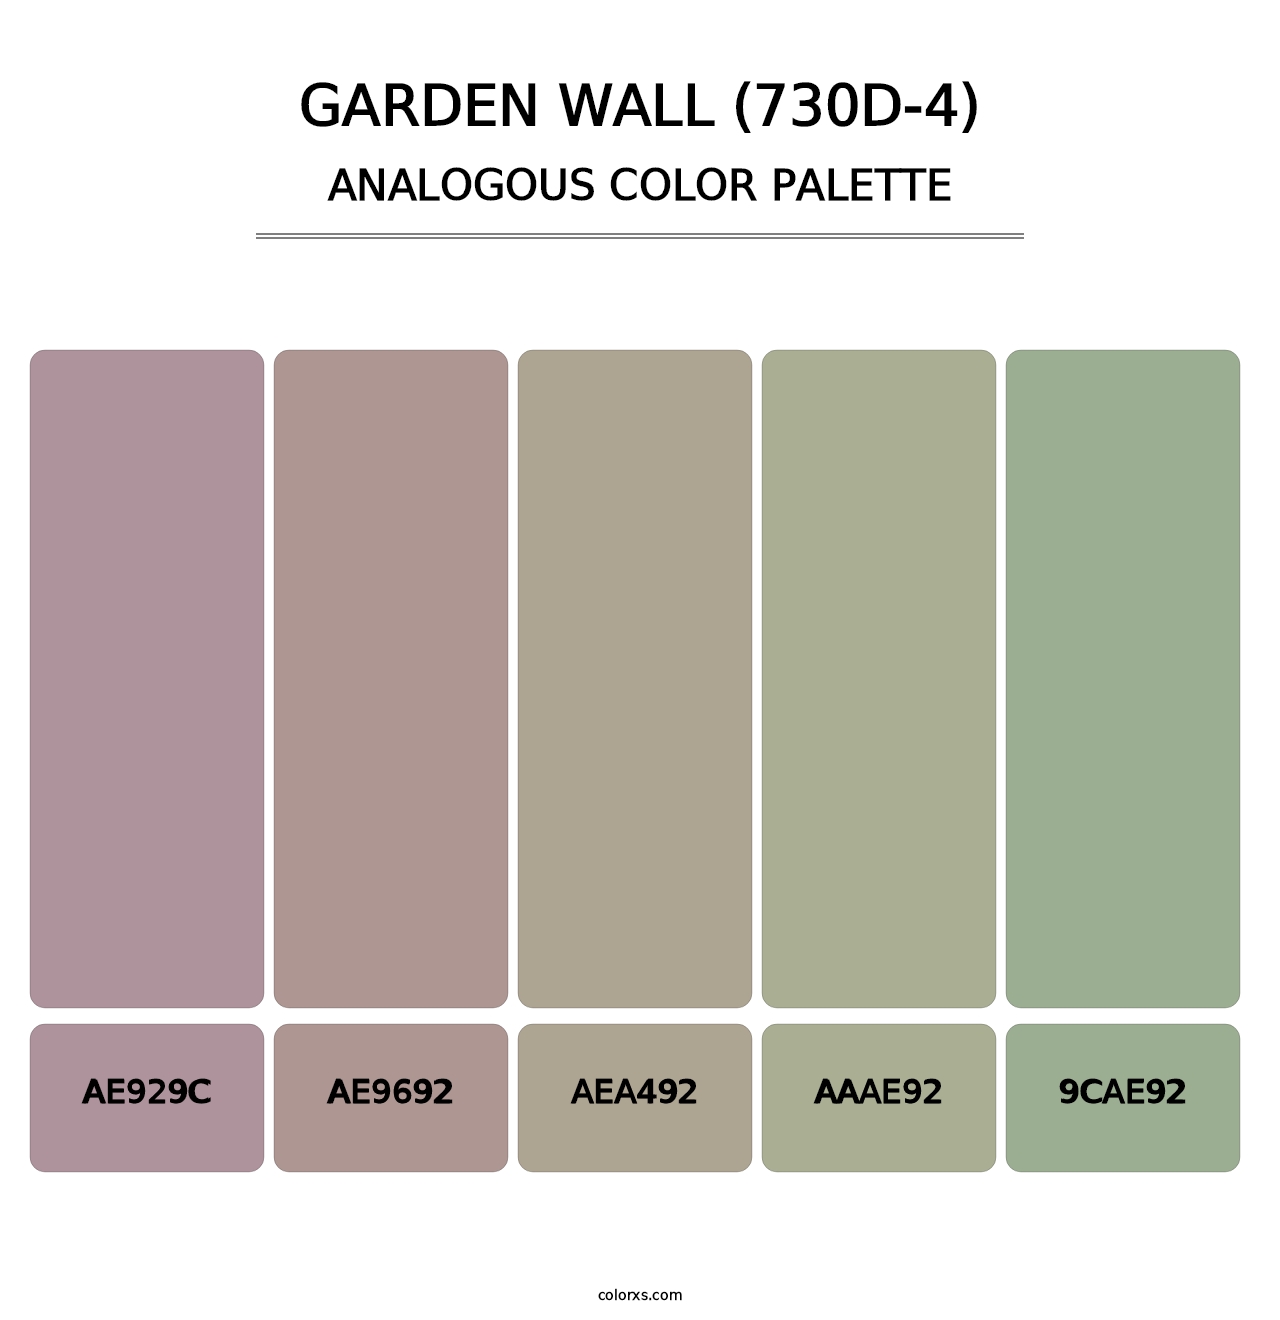 Garden Wall (730D-4) - Analogous Color Palette